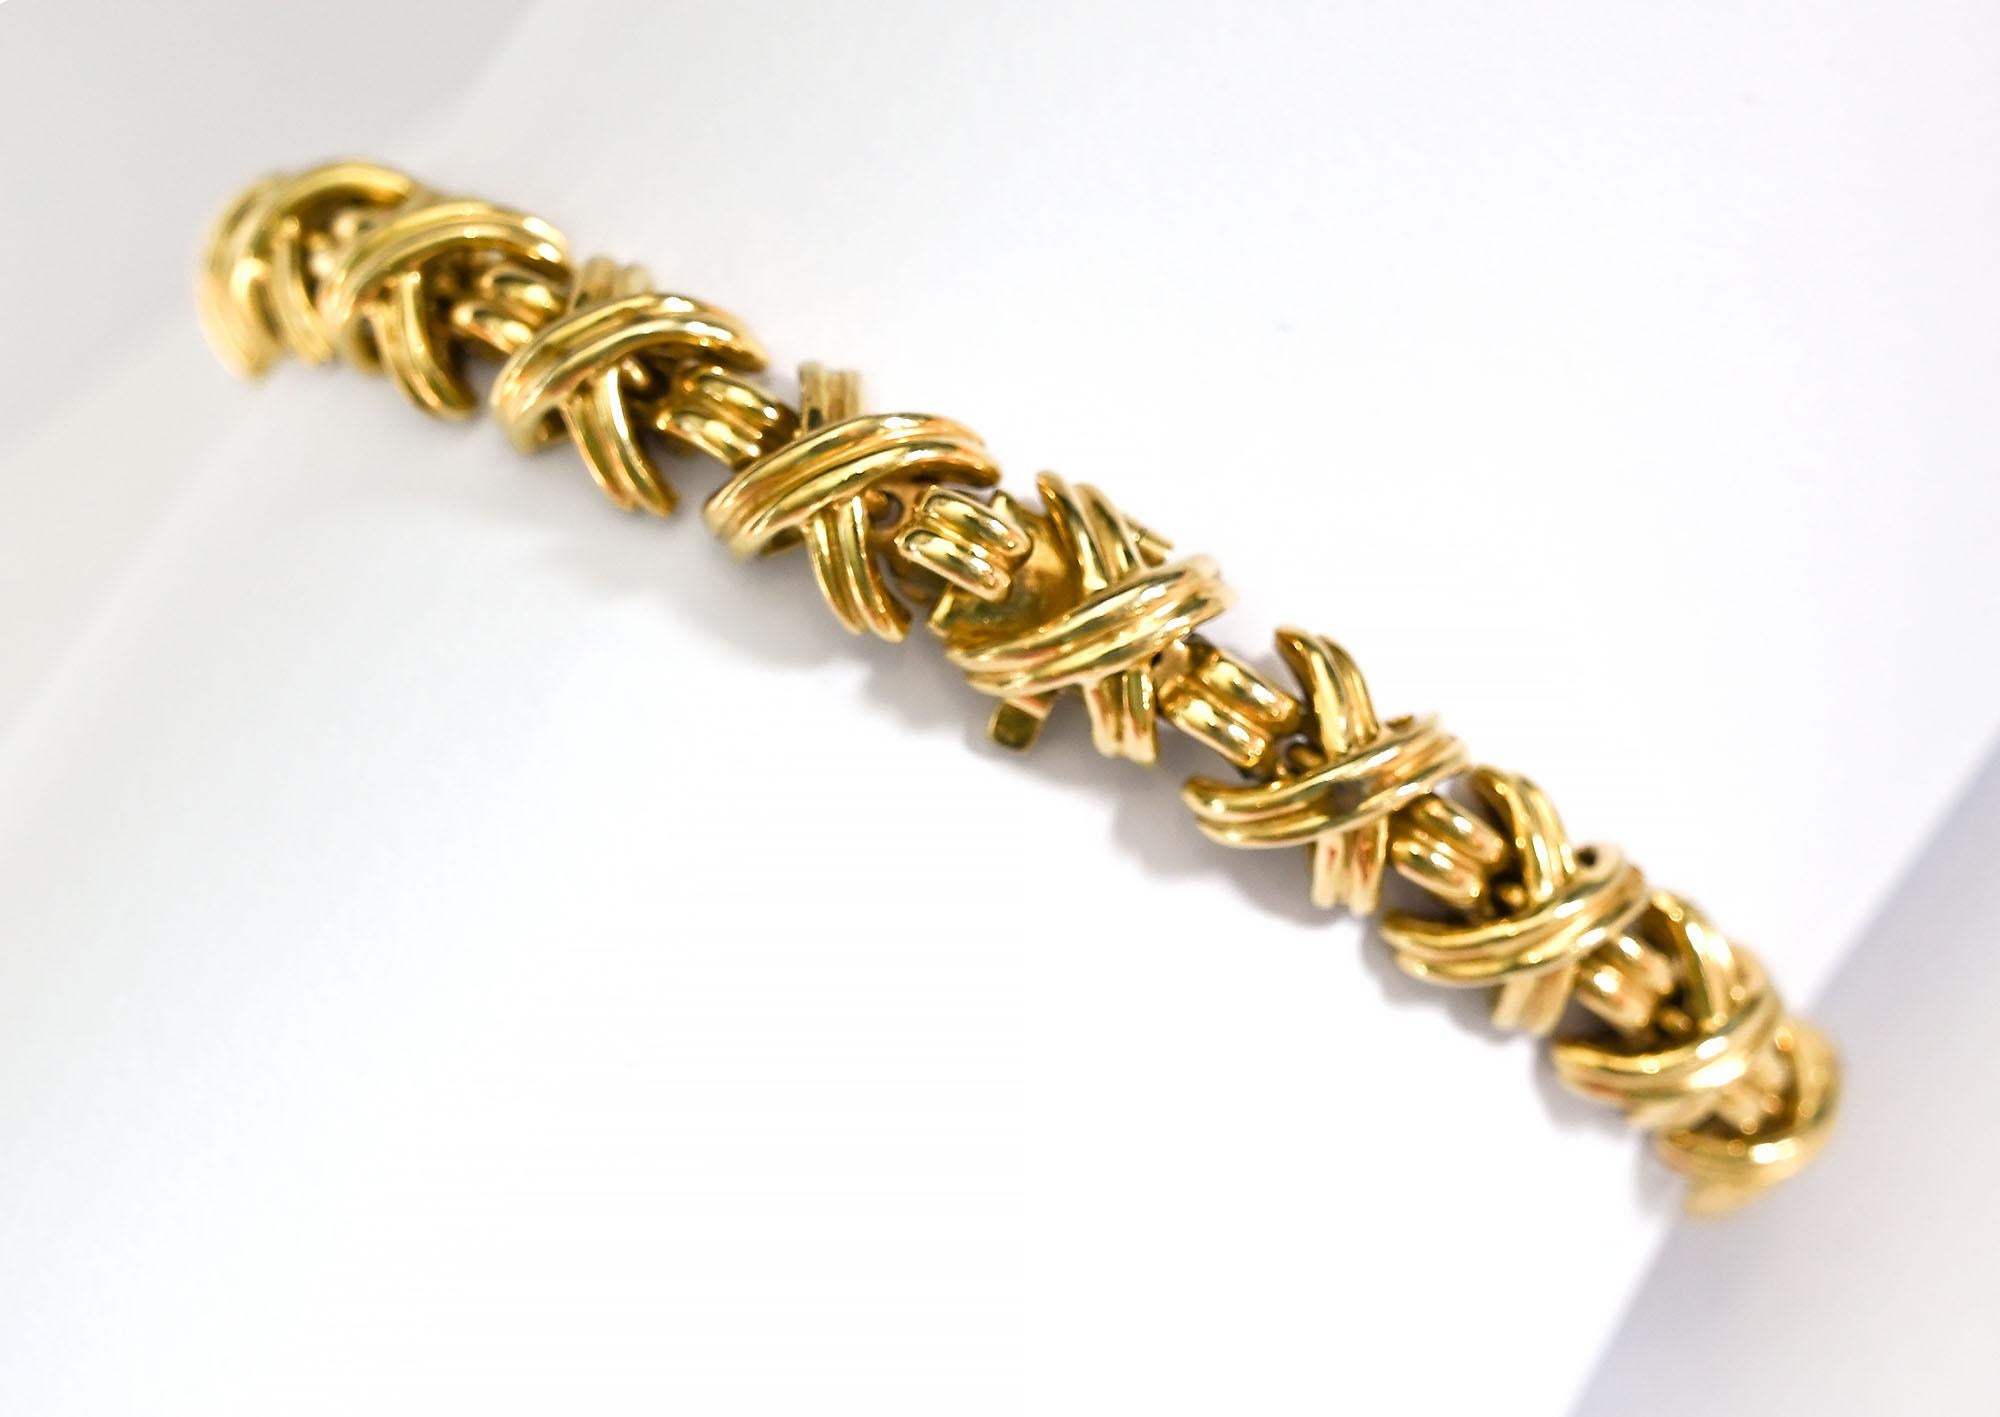 Ce bracelet X est l'un des designs emblématiques de Tiffany, souvent appelé le bracelet Kiss. Il n'est plus en production.
Le bracelet est large d'un quart de pouce, il peut donc être utilisé seul ou groupé avec d'autres. La longueur est de 7 1/4